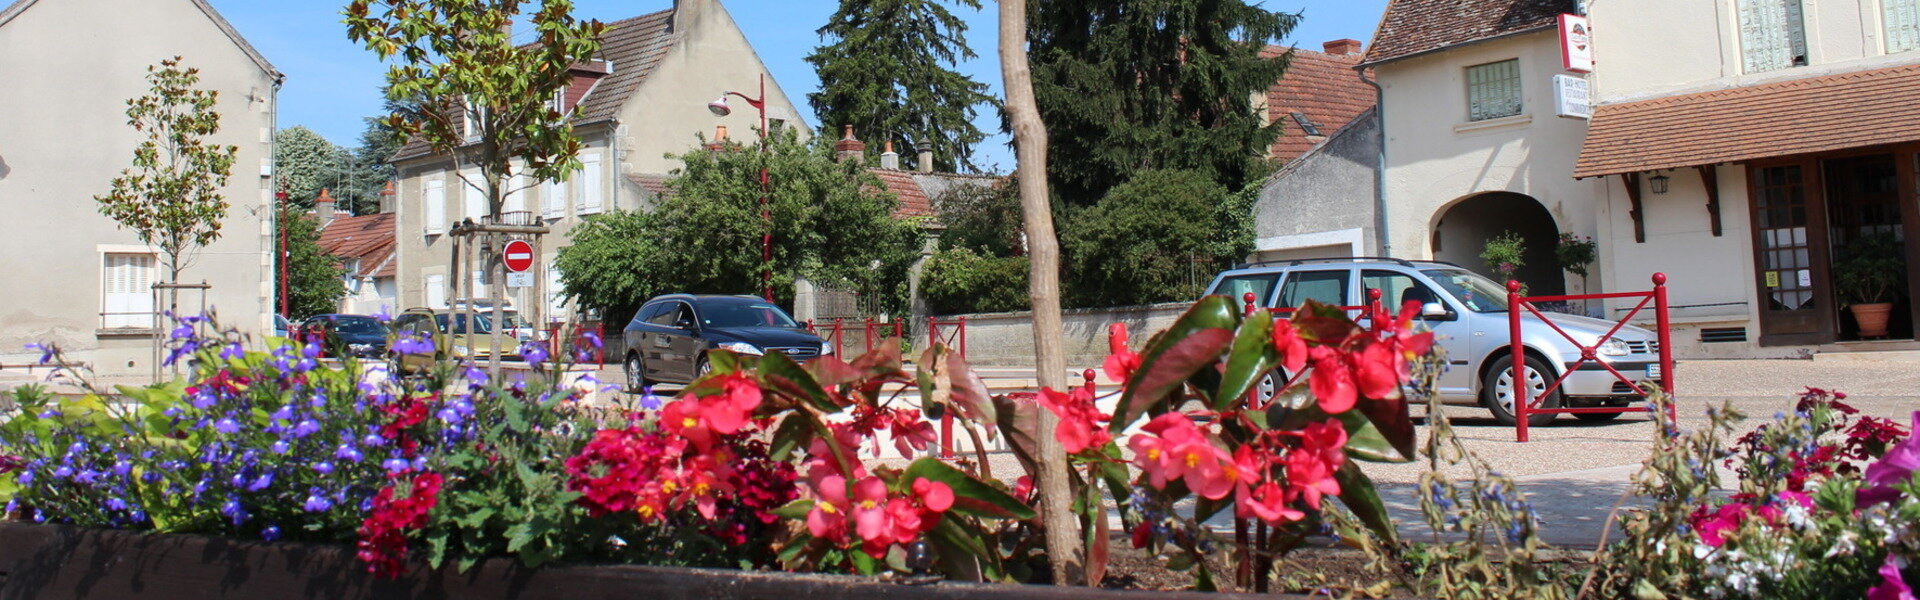 Mairie de Saint-Parize-Le-Châtel - Nièvre